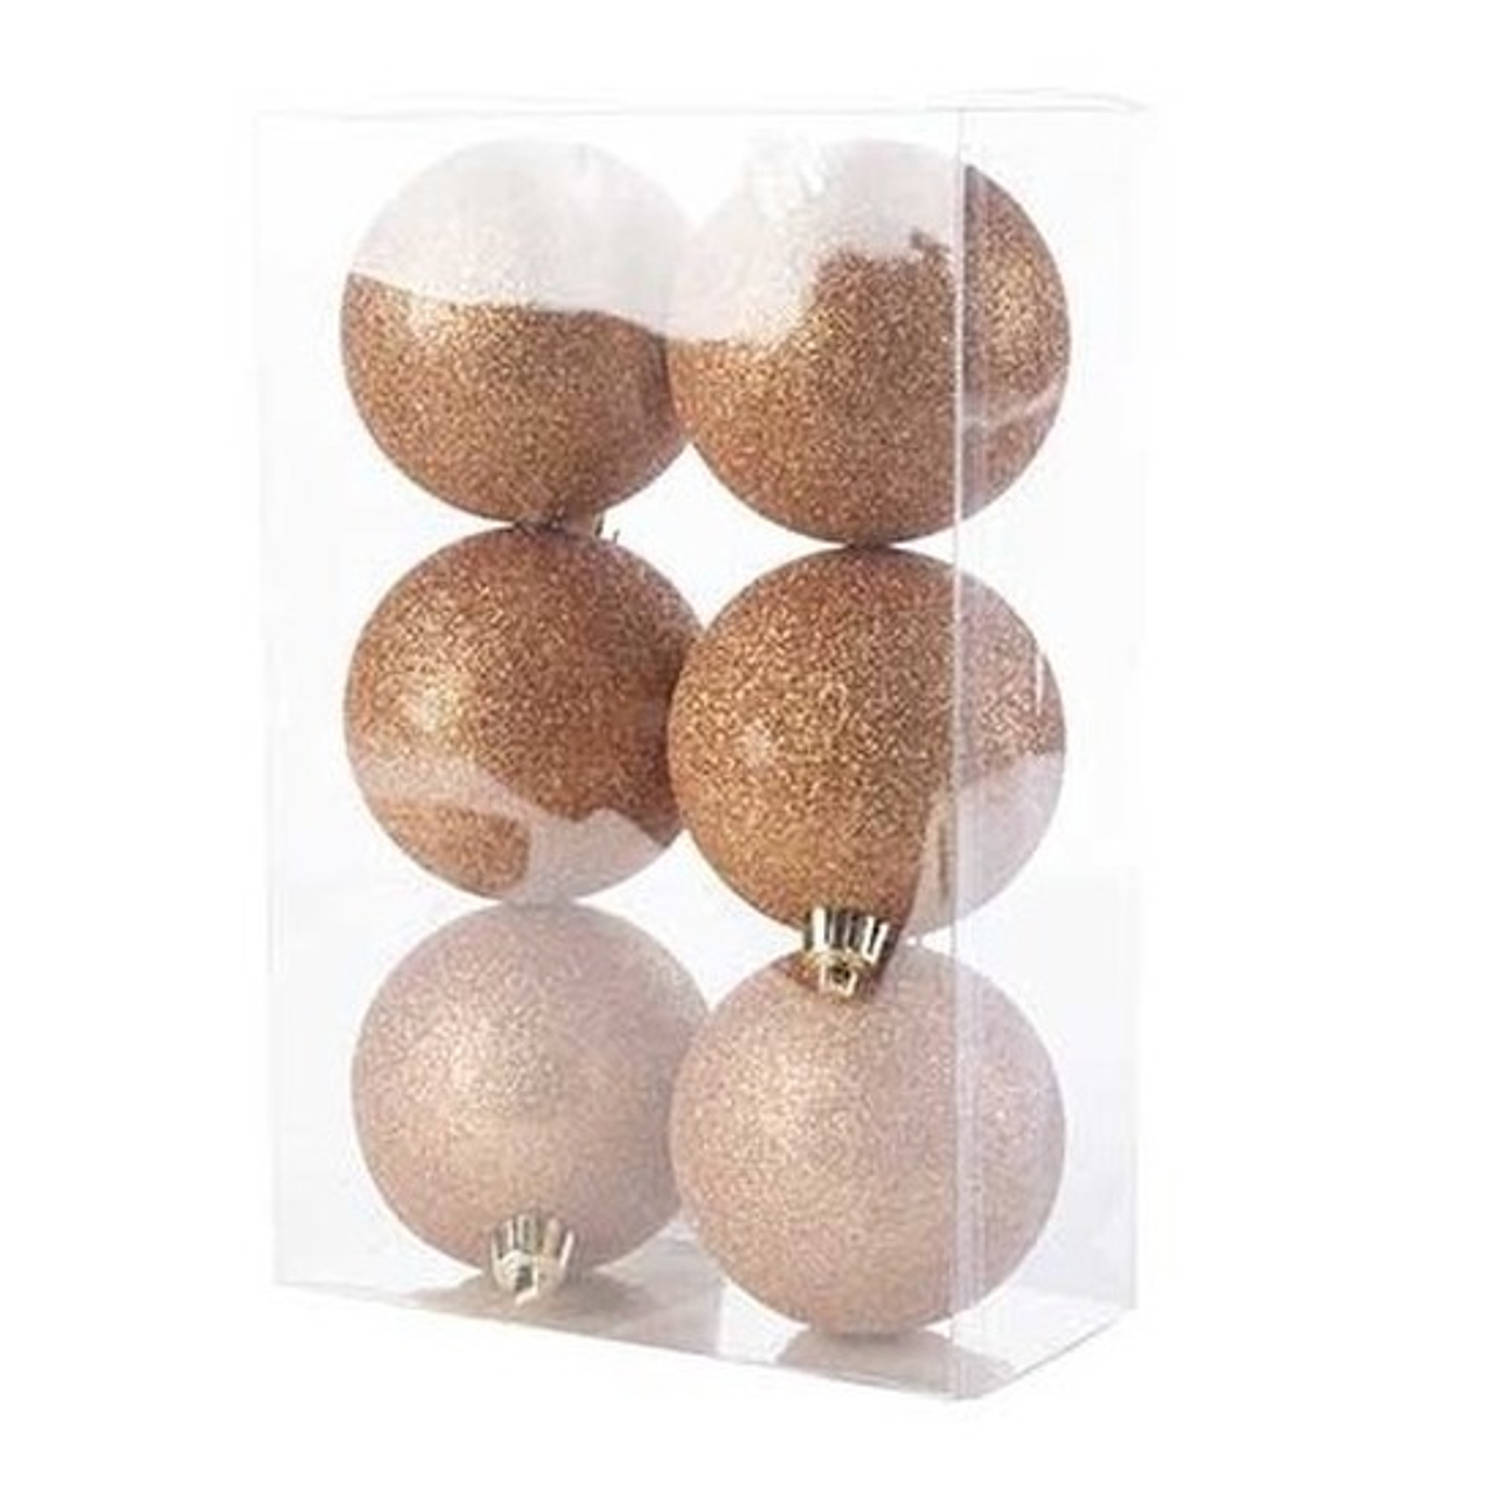 6x Kunststof kerstballen glitter koper 8 cm kerstboom versiering/decoratie - Kerstbal